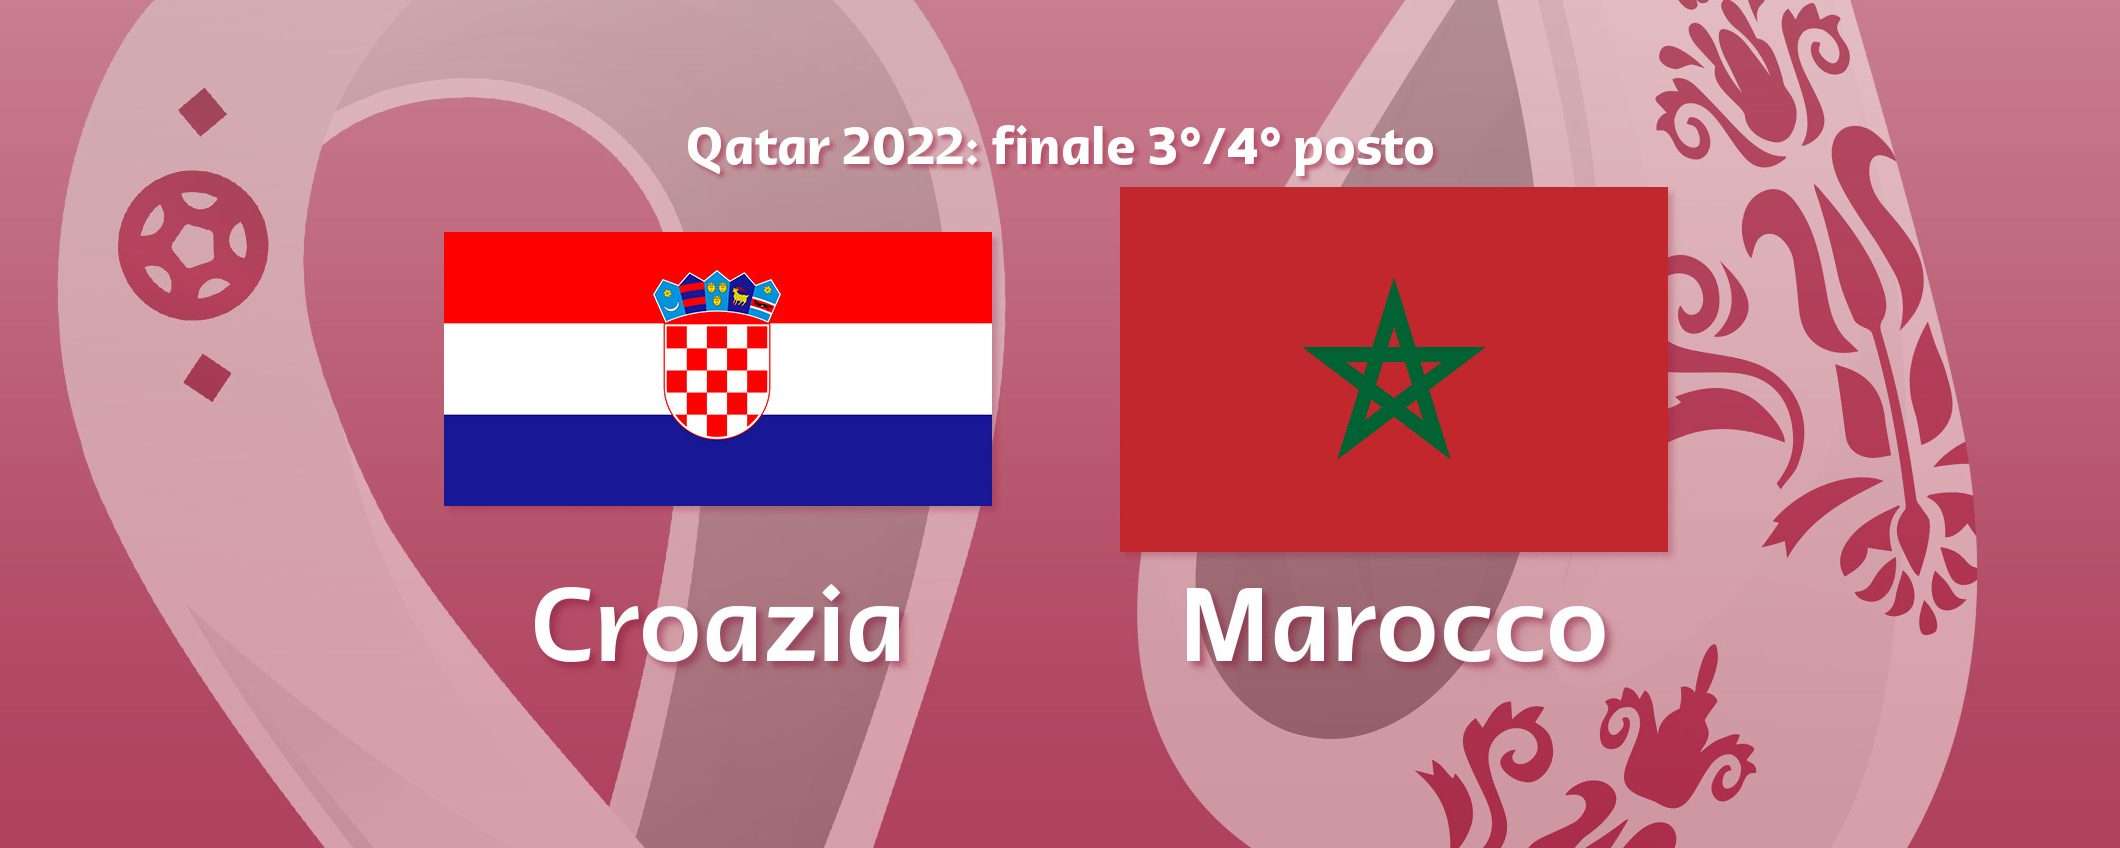 Come vedere Croazia-Marocco in streaming